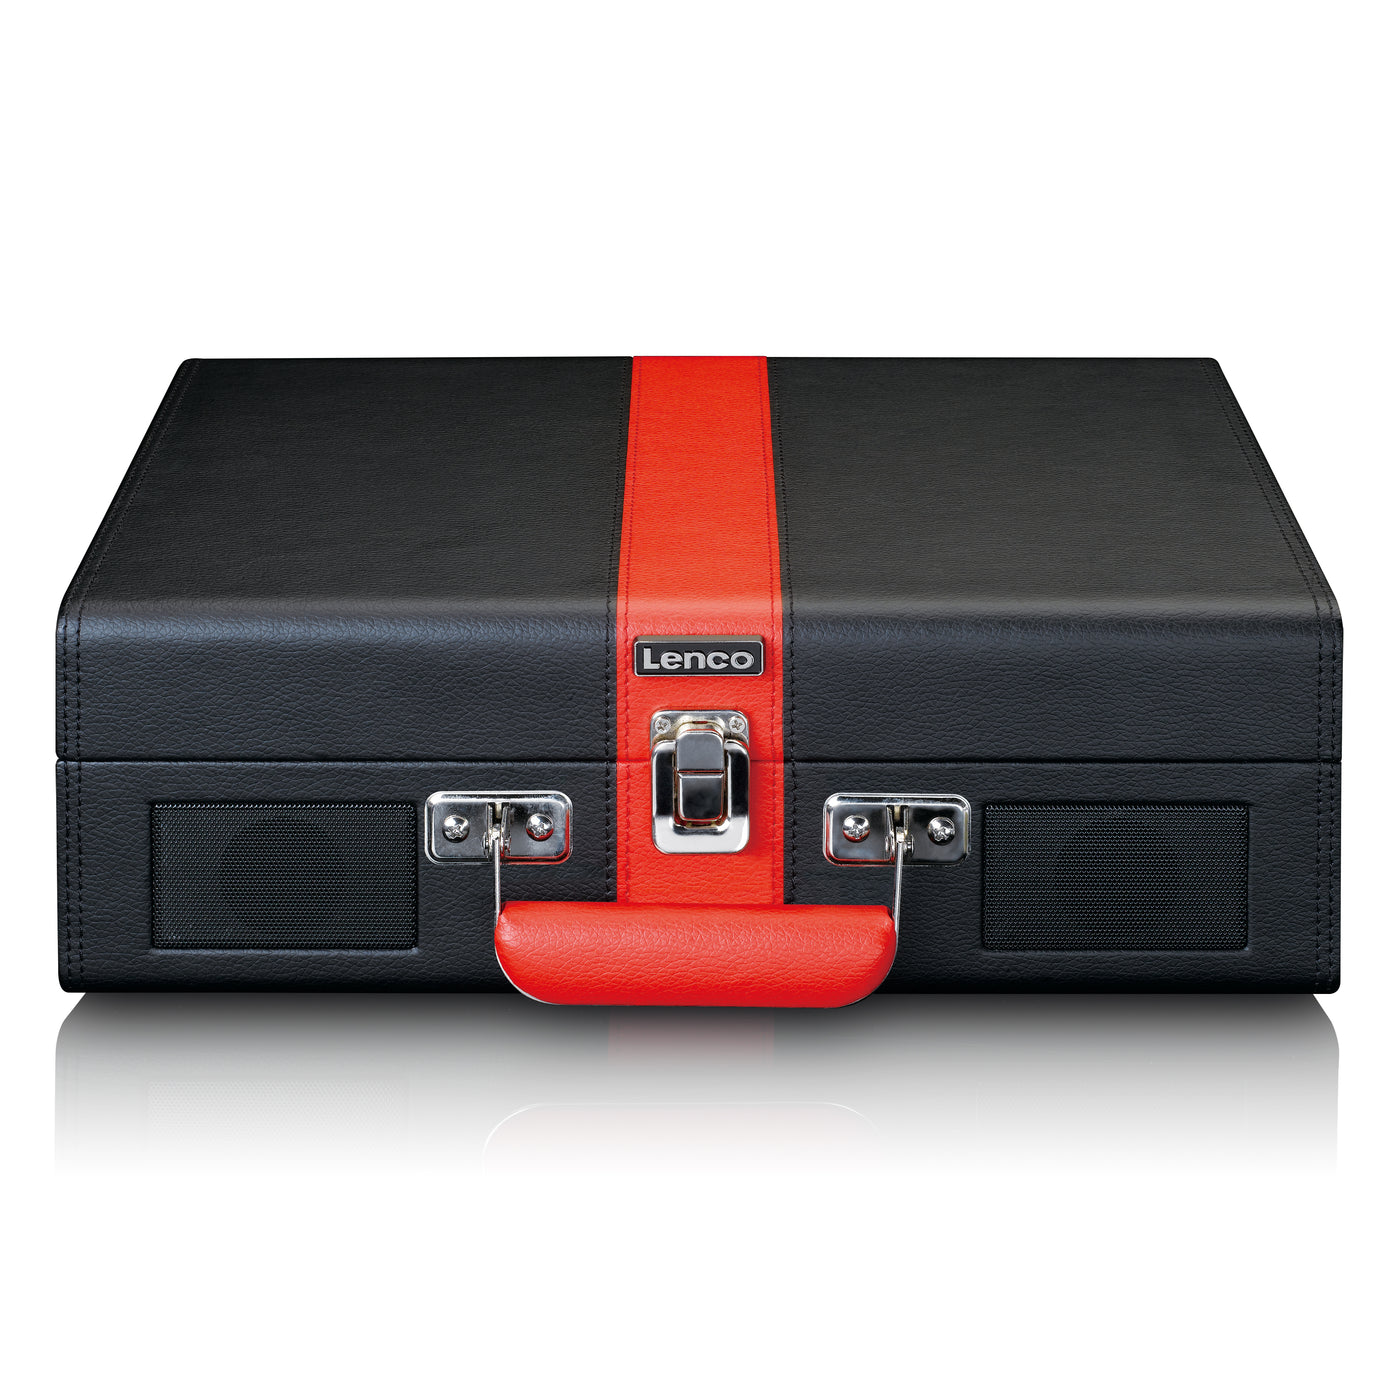 CLASSIC PHONO TT-110BKRD - Gramofon z odbiorem Bluetooth® i wbudowanymi głośnikami - Czarny Czerwony